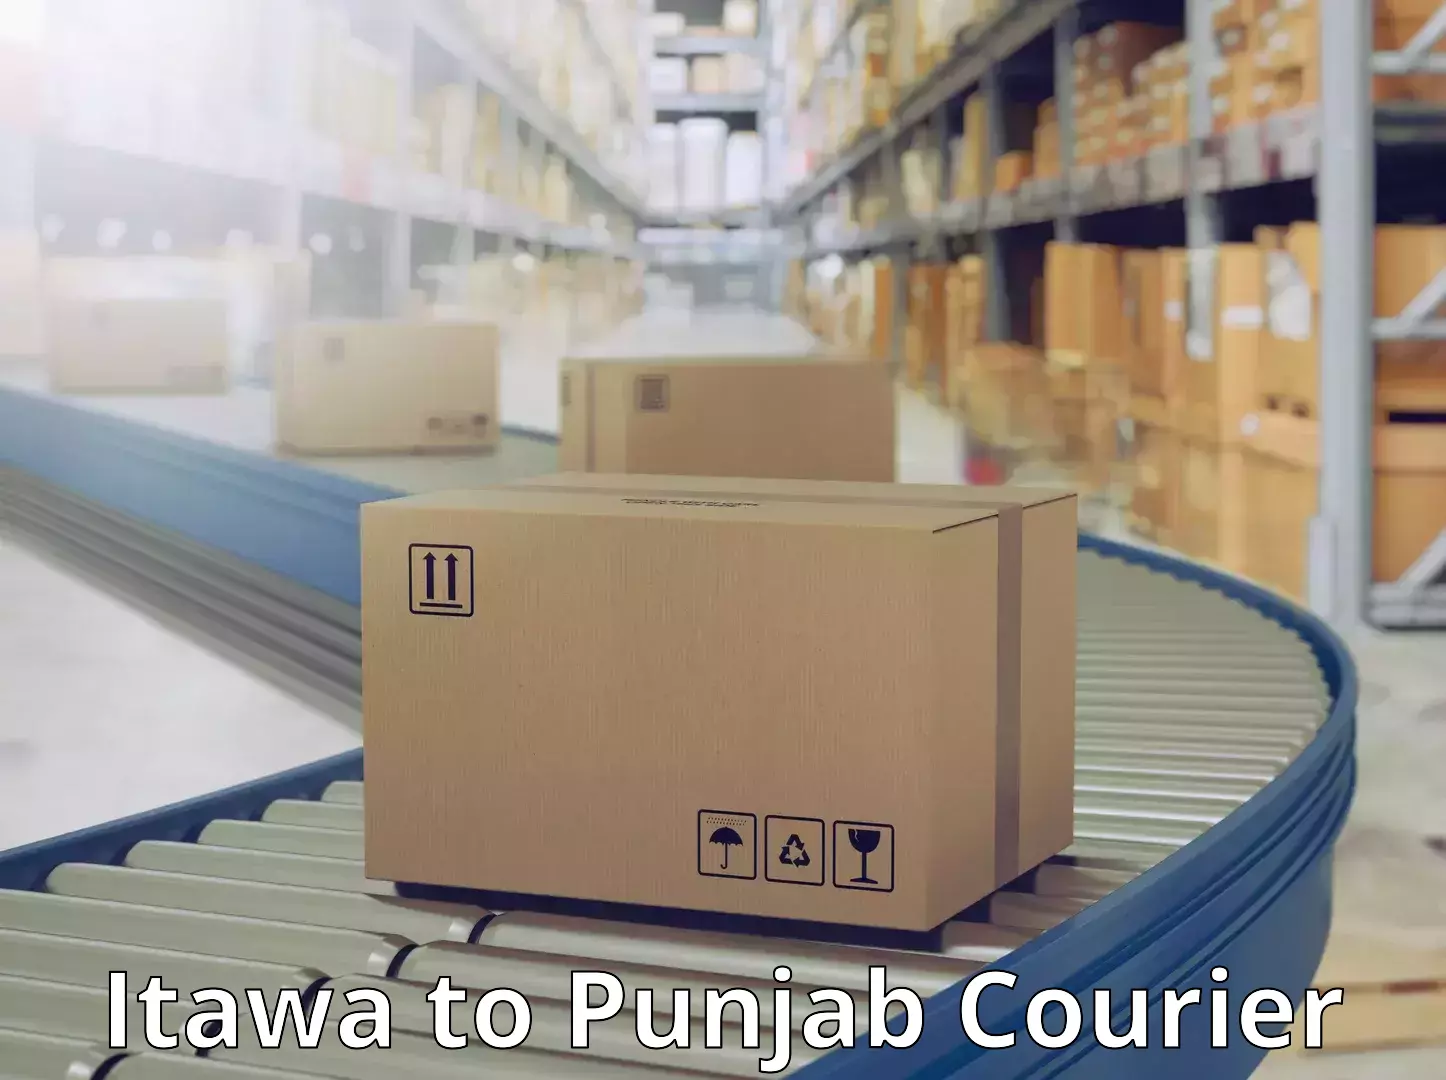 On-demand courier Itawa to Punjab